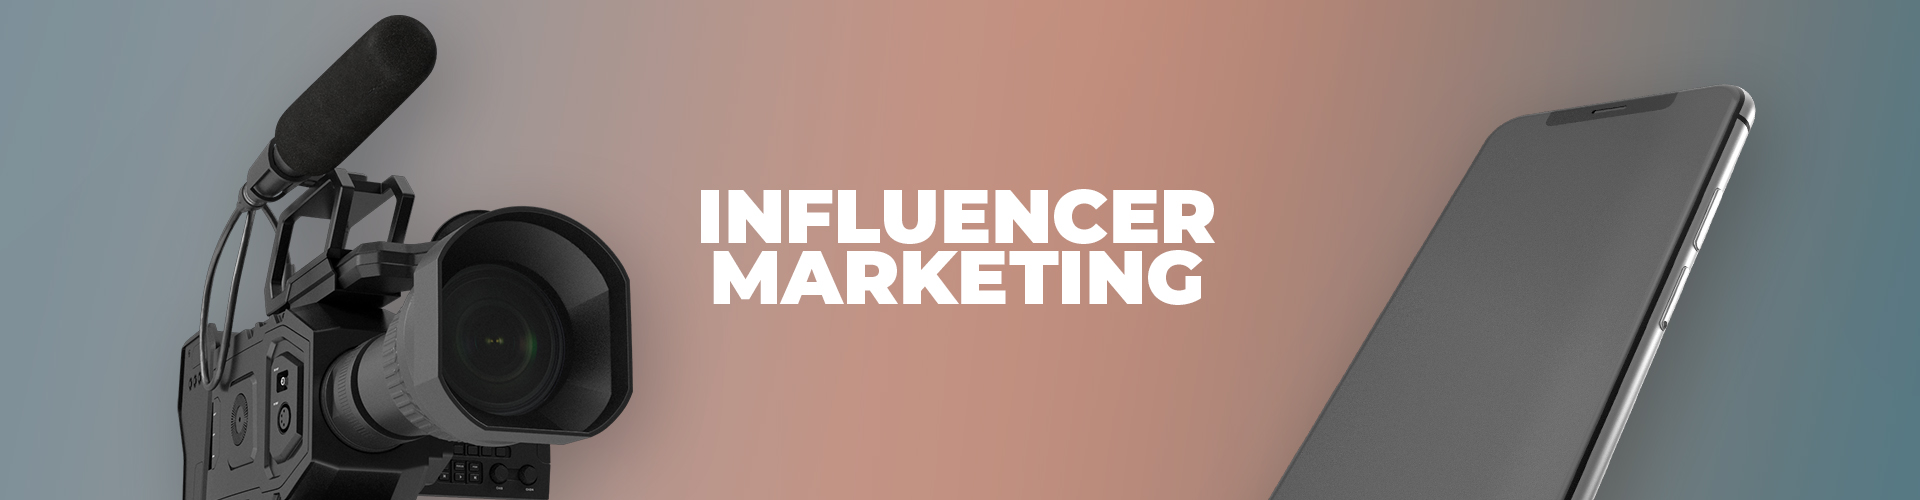 Influencer Marketing - Lassen Sie sich jetzt beraten!